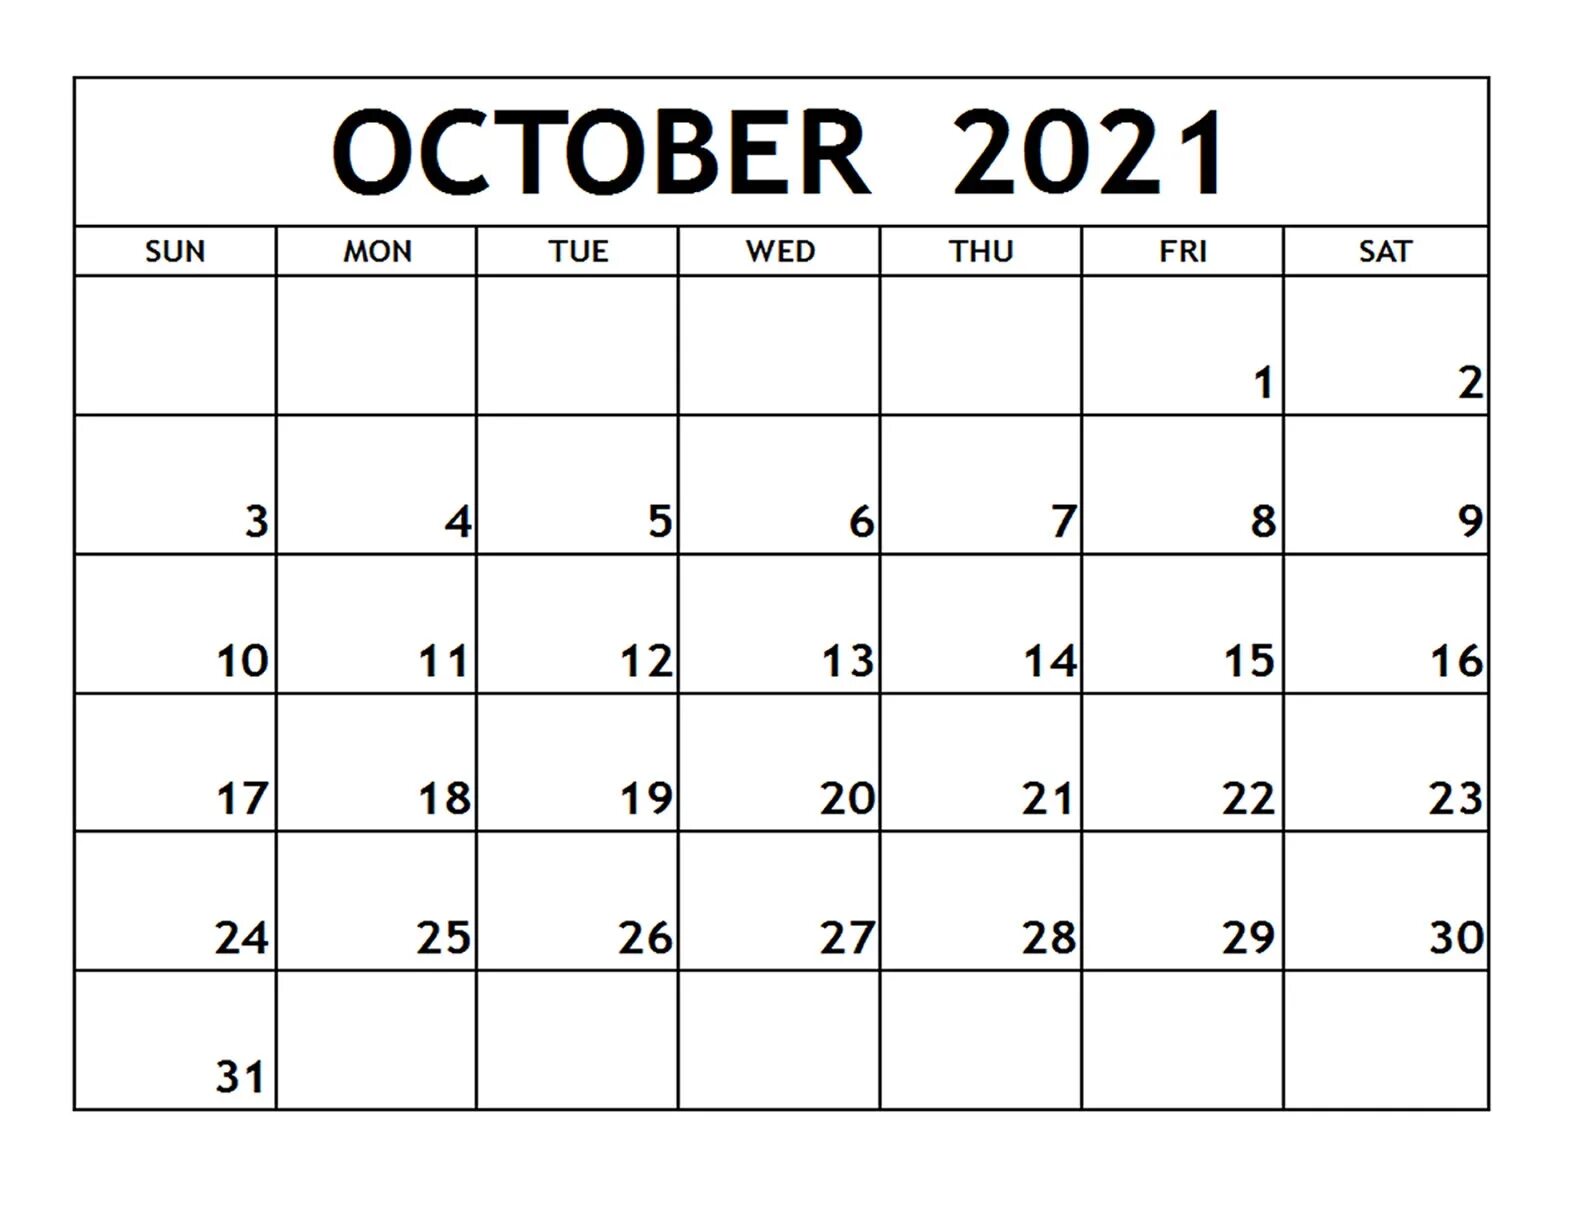 5 октябрь 2021. Октябрь 2021. Календарь октябрь. Календарь октябрь ноябрь 2021. Календарь на октябрь 2021 года.